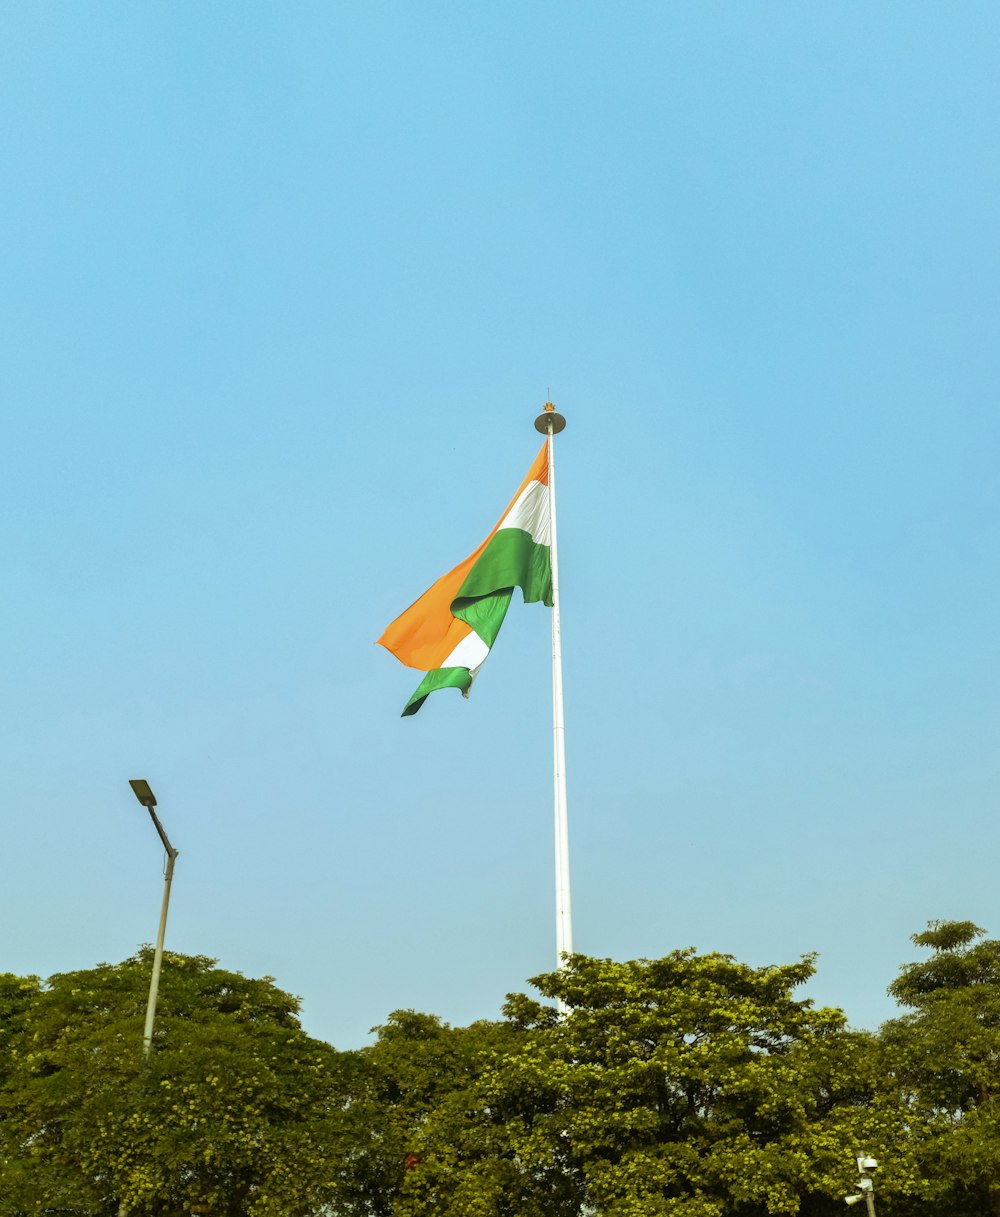 a flag on a flagpole